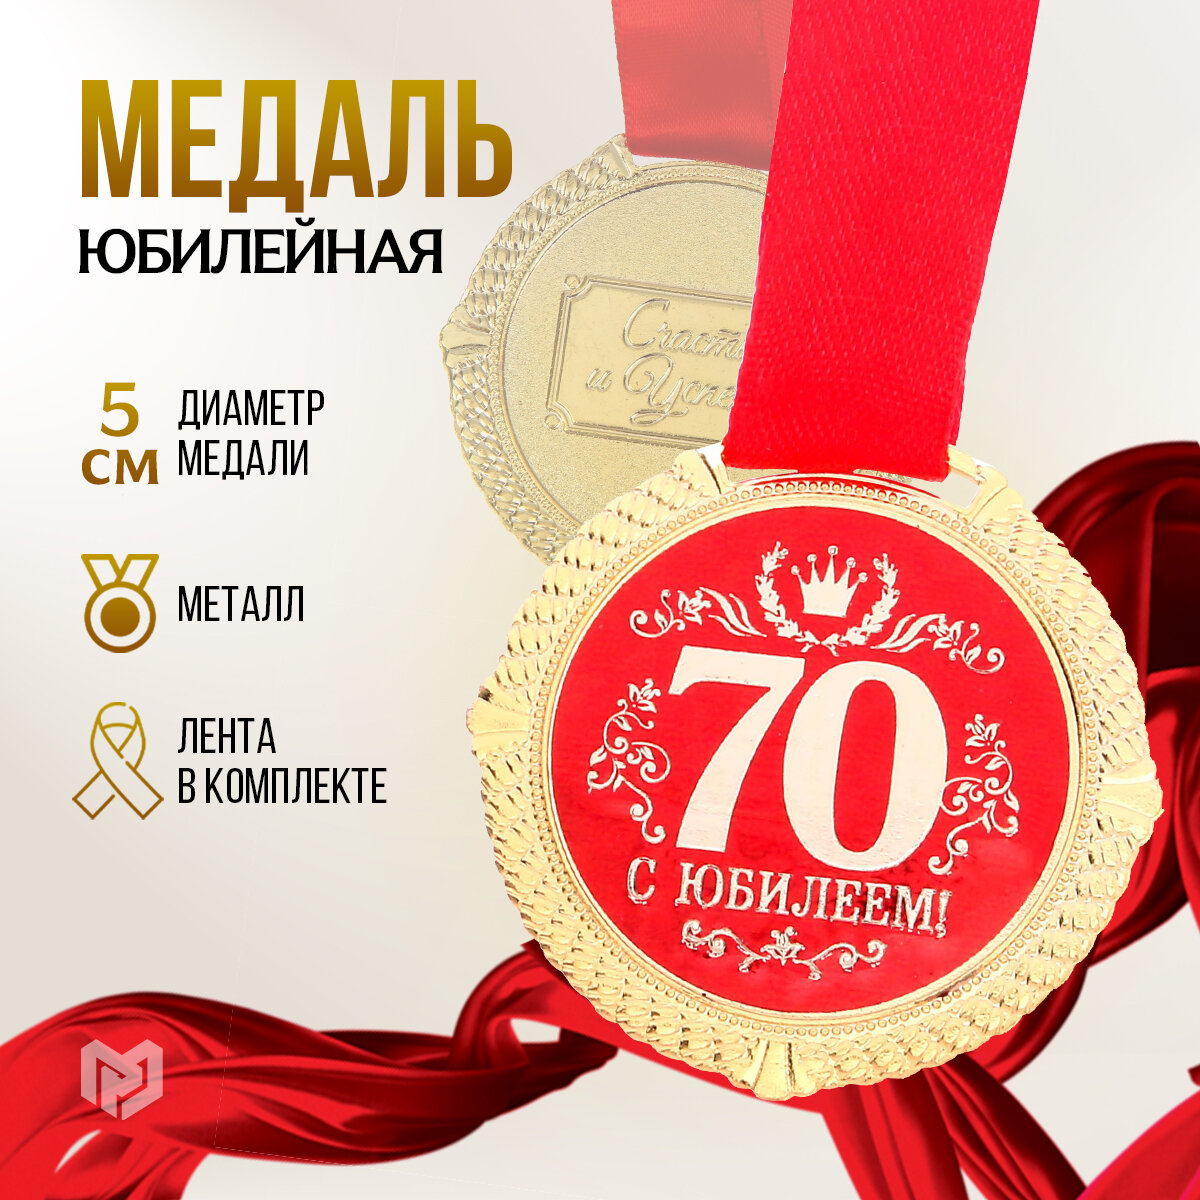 Медаль сувенирная на подарочной открытке "С юбилеем 70 лет", d = 5 см